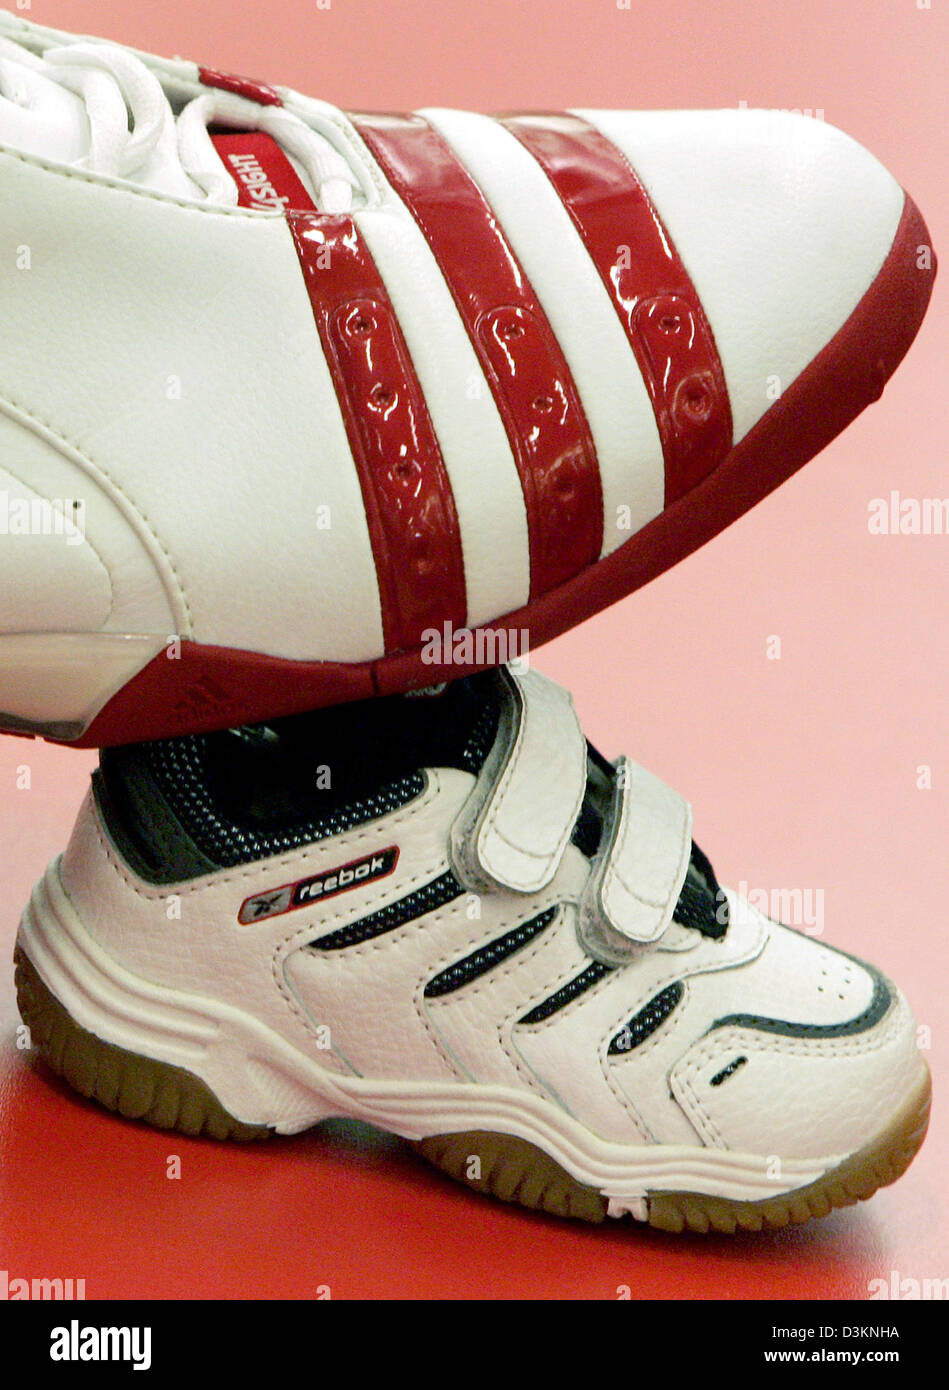 Afp) - l'image montre un sneaker basket adidas sur le dessus d'un bébé  Reebok sneaker dans un magasin d'articles de sport à Francfort-sur-Main,  Allemagne, le mercredi 03 août 2005. En vue de